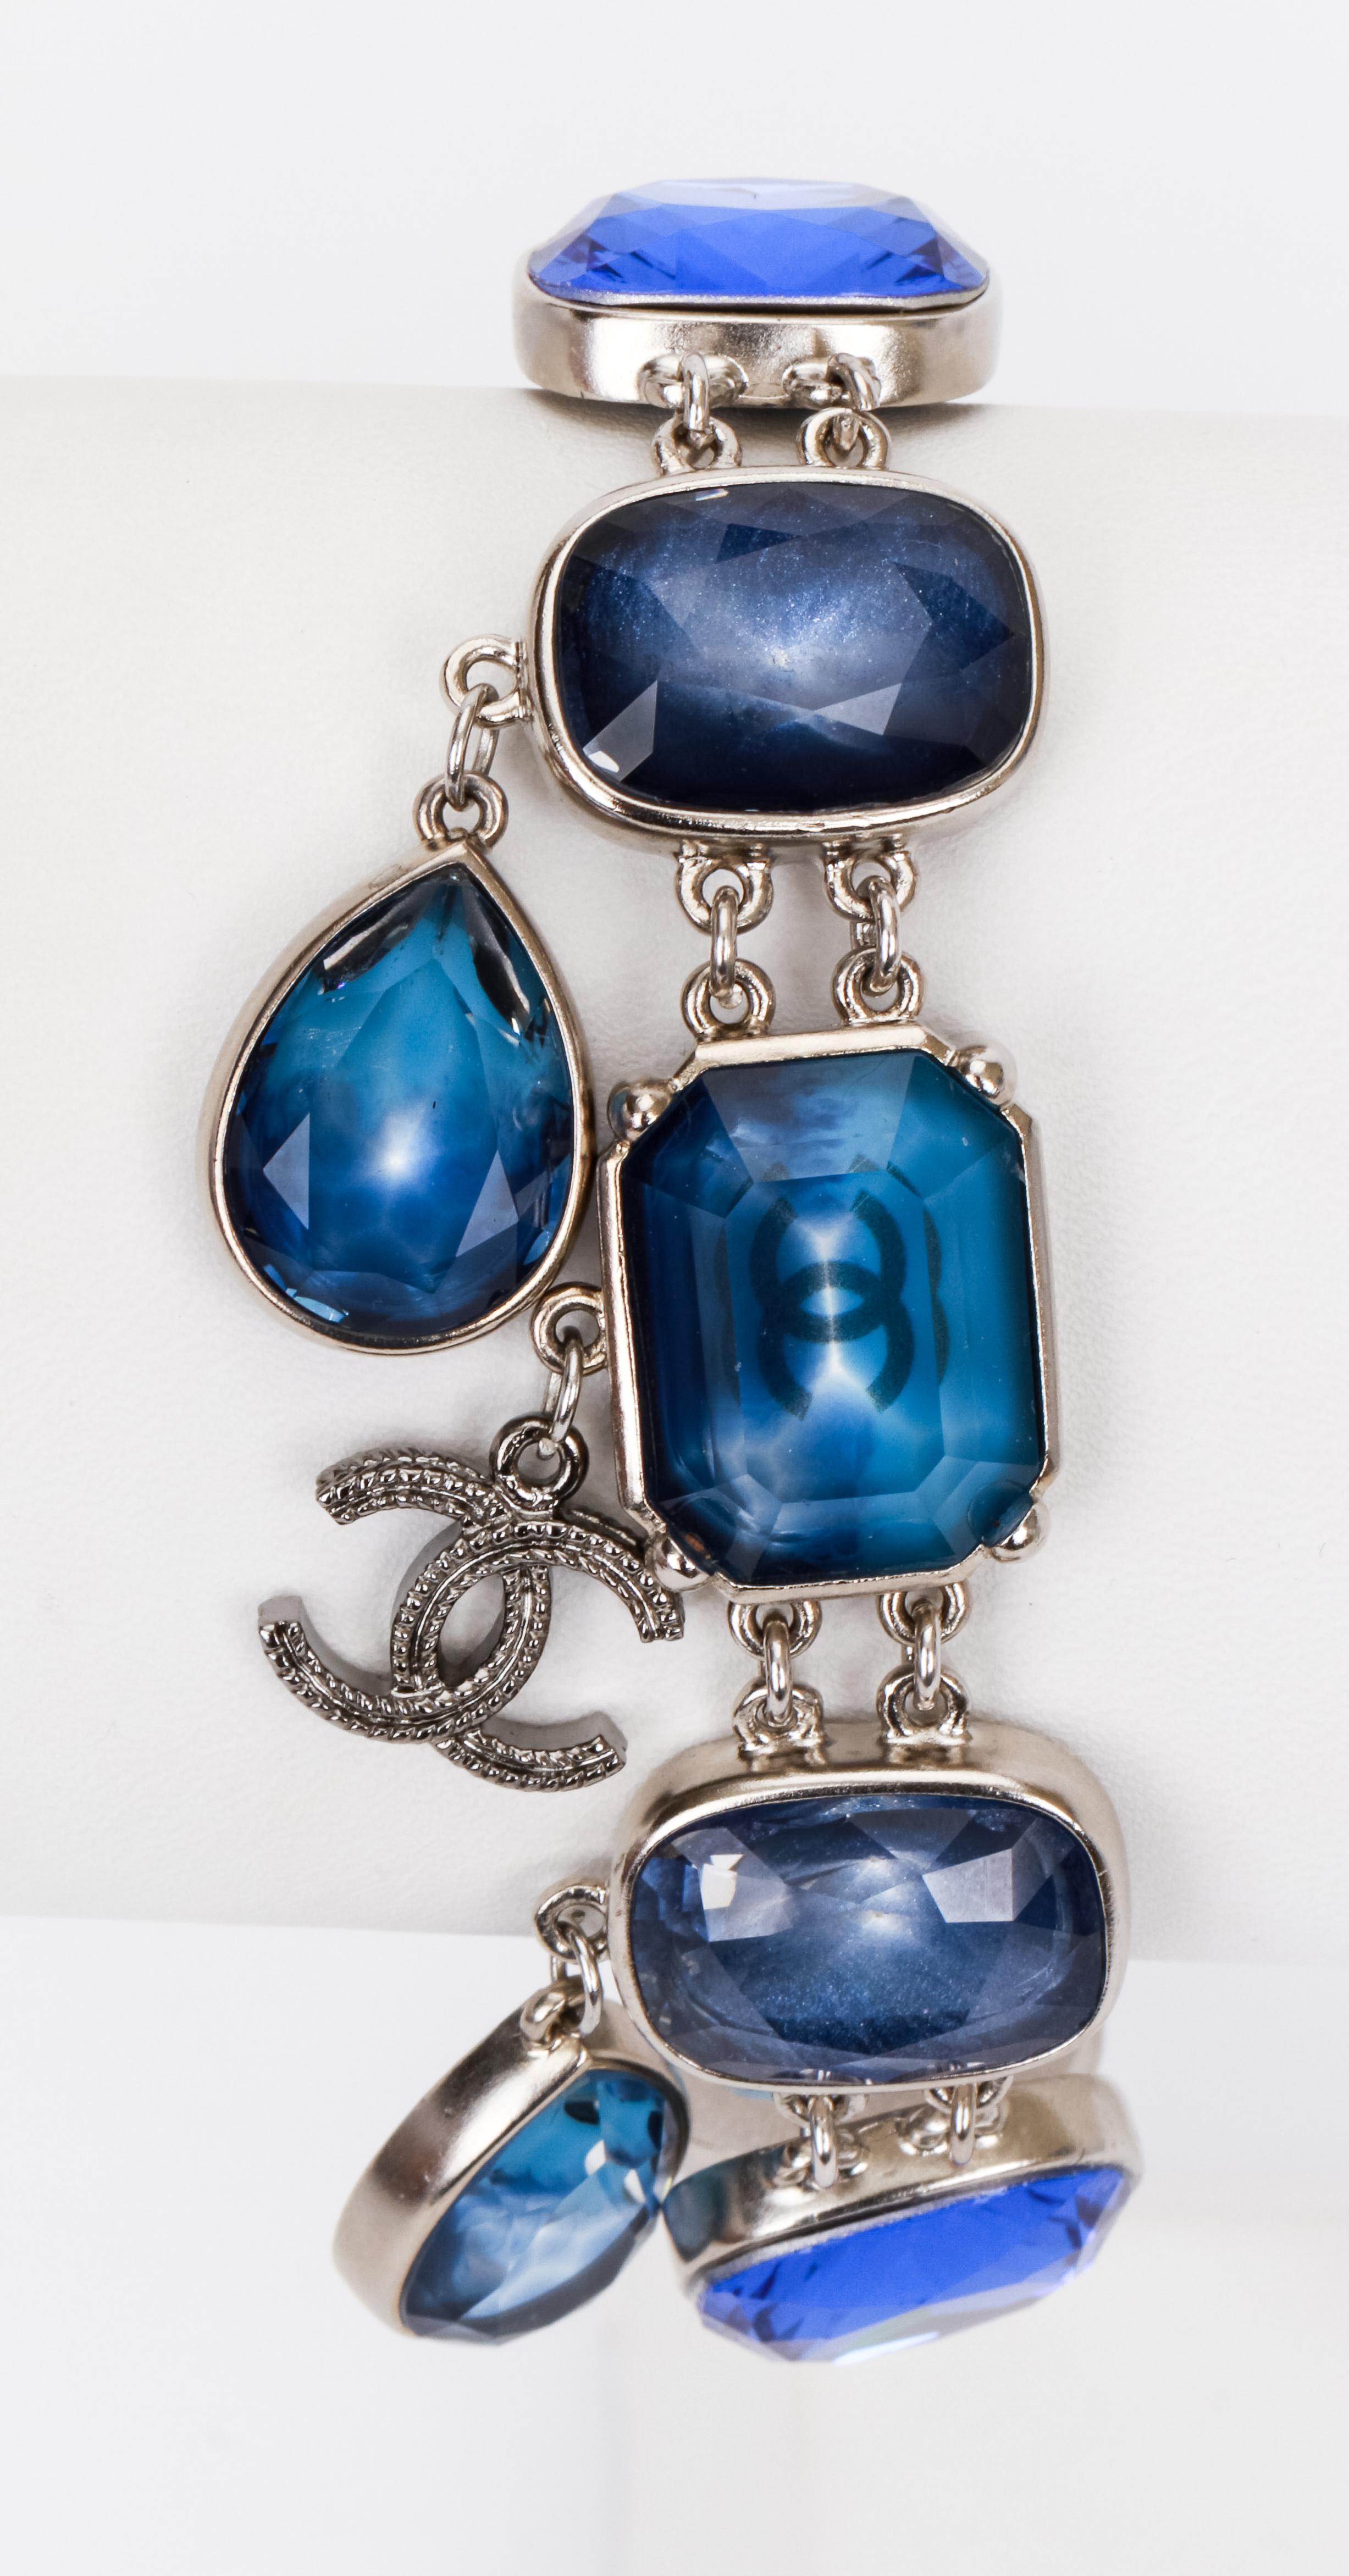 Chanel Armband mit blauen Steinen, gemischte Schliffe mit CC und birnenförmigen Anhängern. Kommt mit Original-Etui.